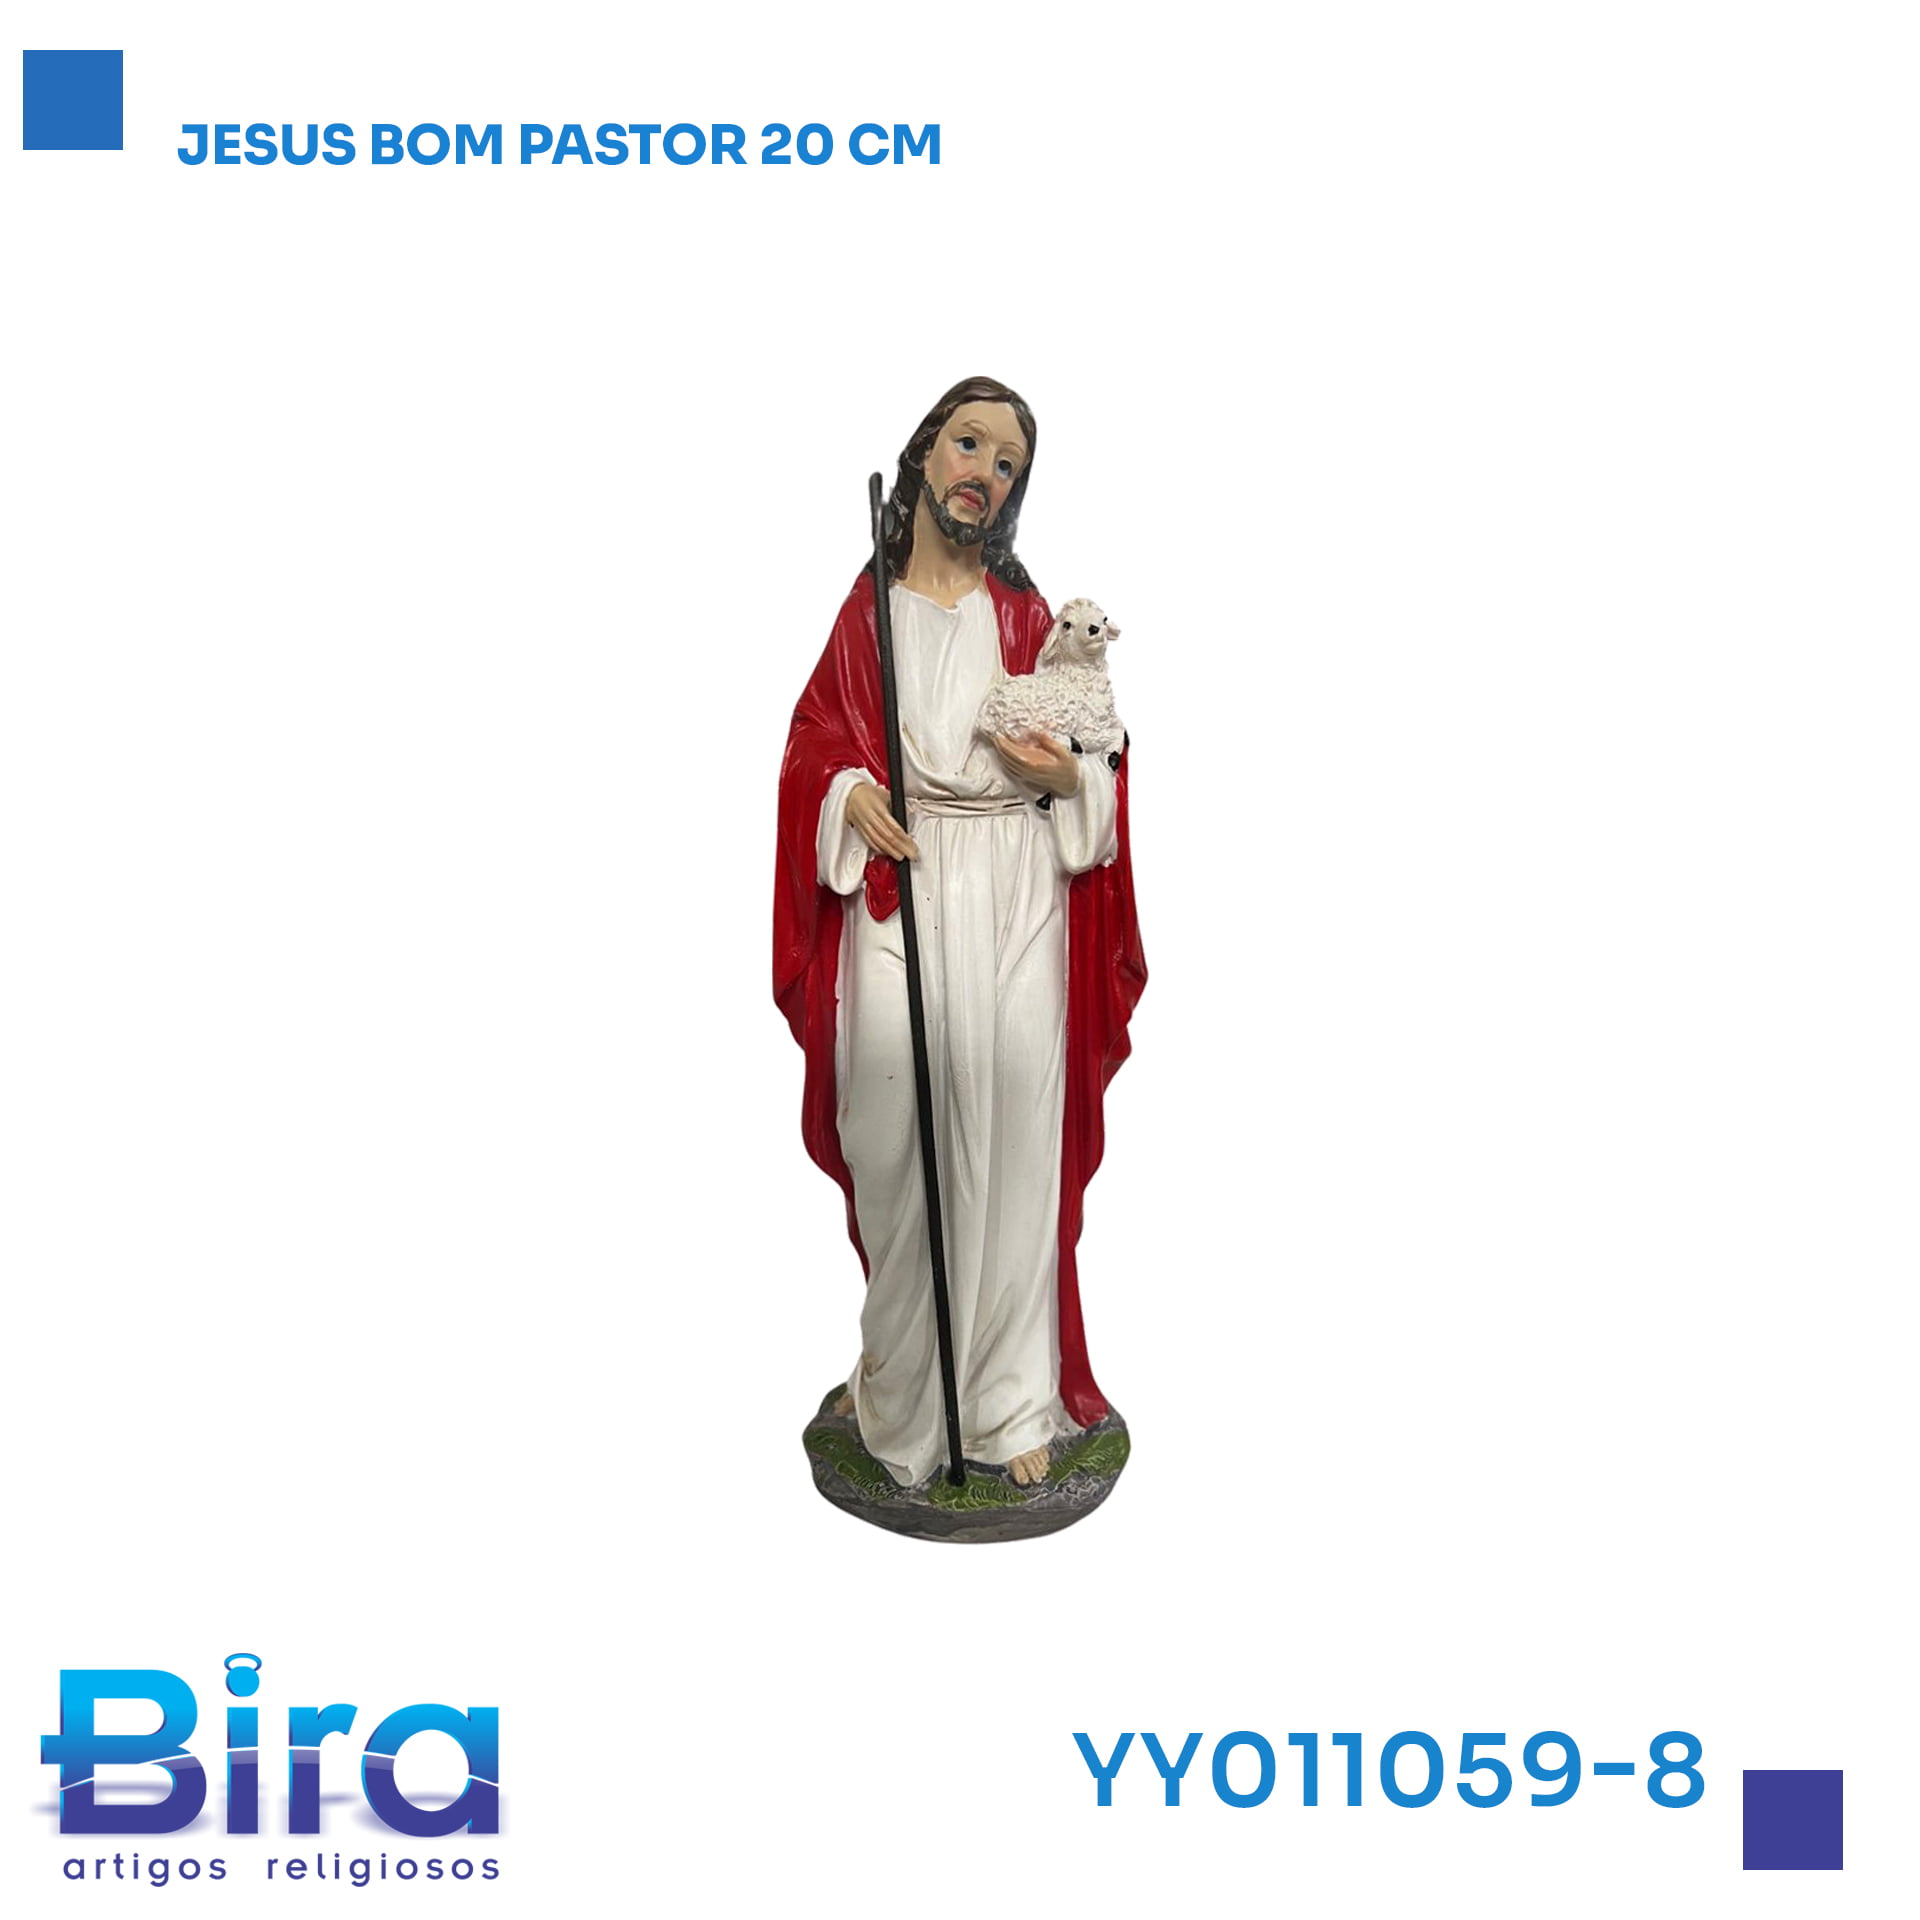 Bira Artigos Religiosos - JESUS BOM PASTOR 20CM  Cód.: YY011059-8